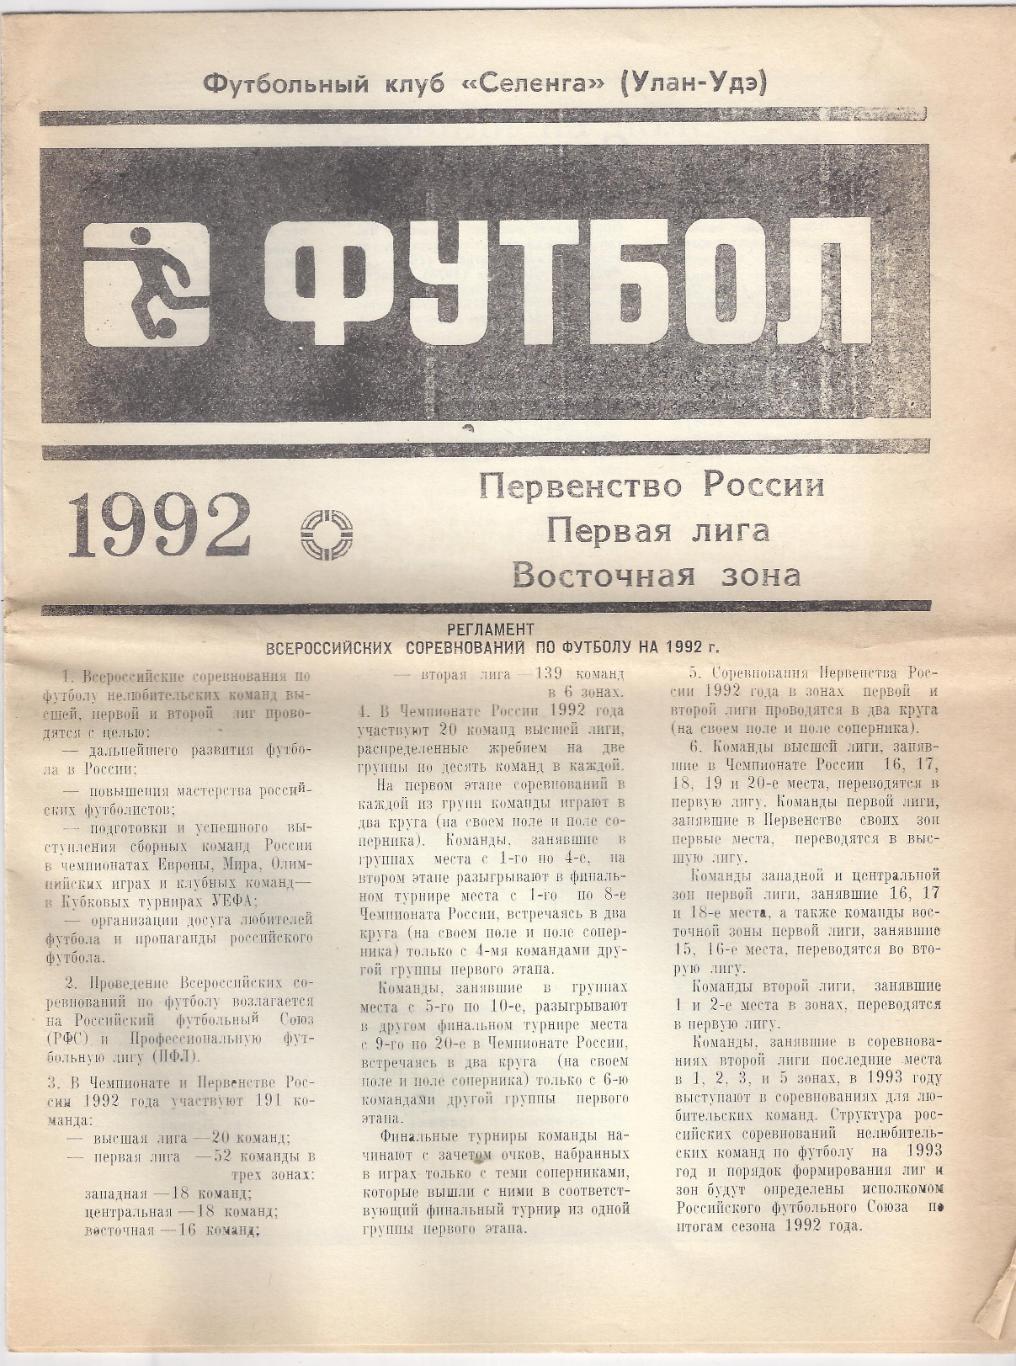 Улан-Удэ 1992